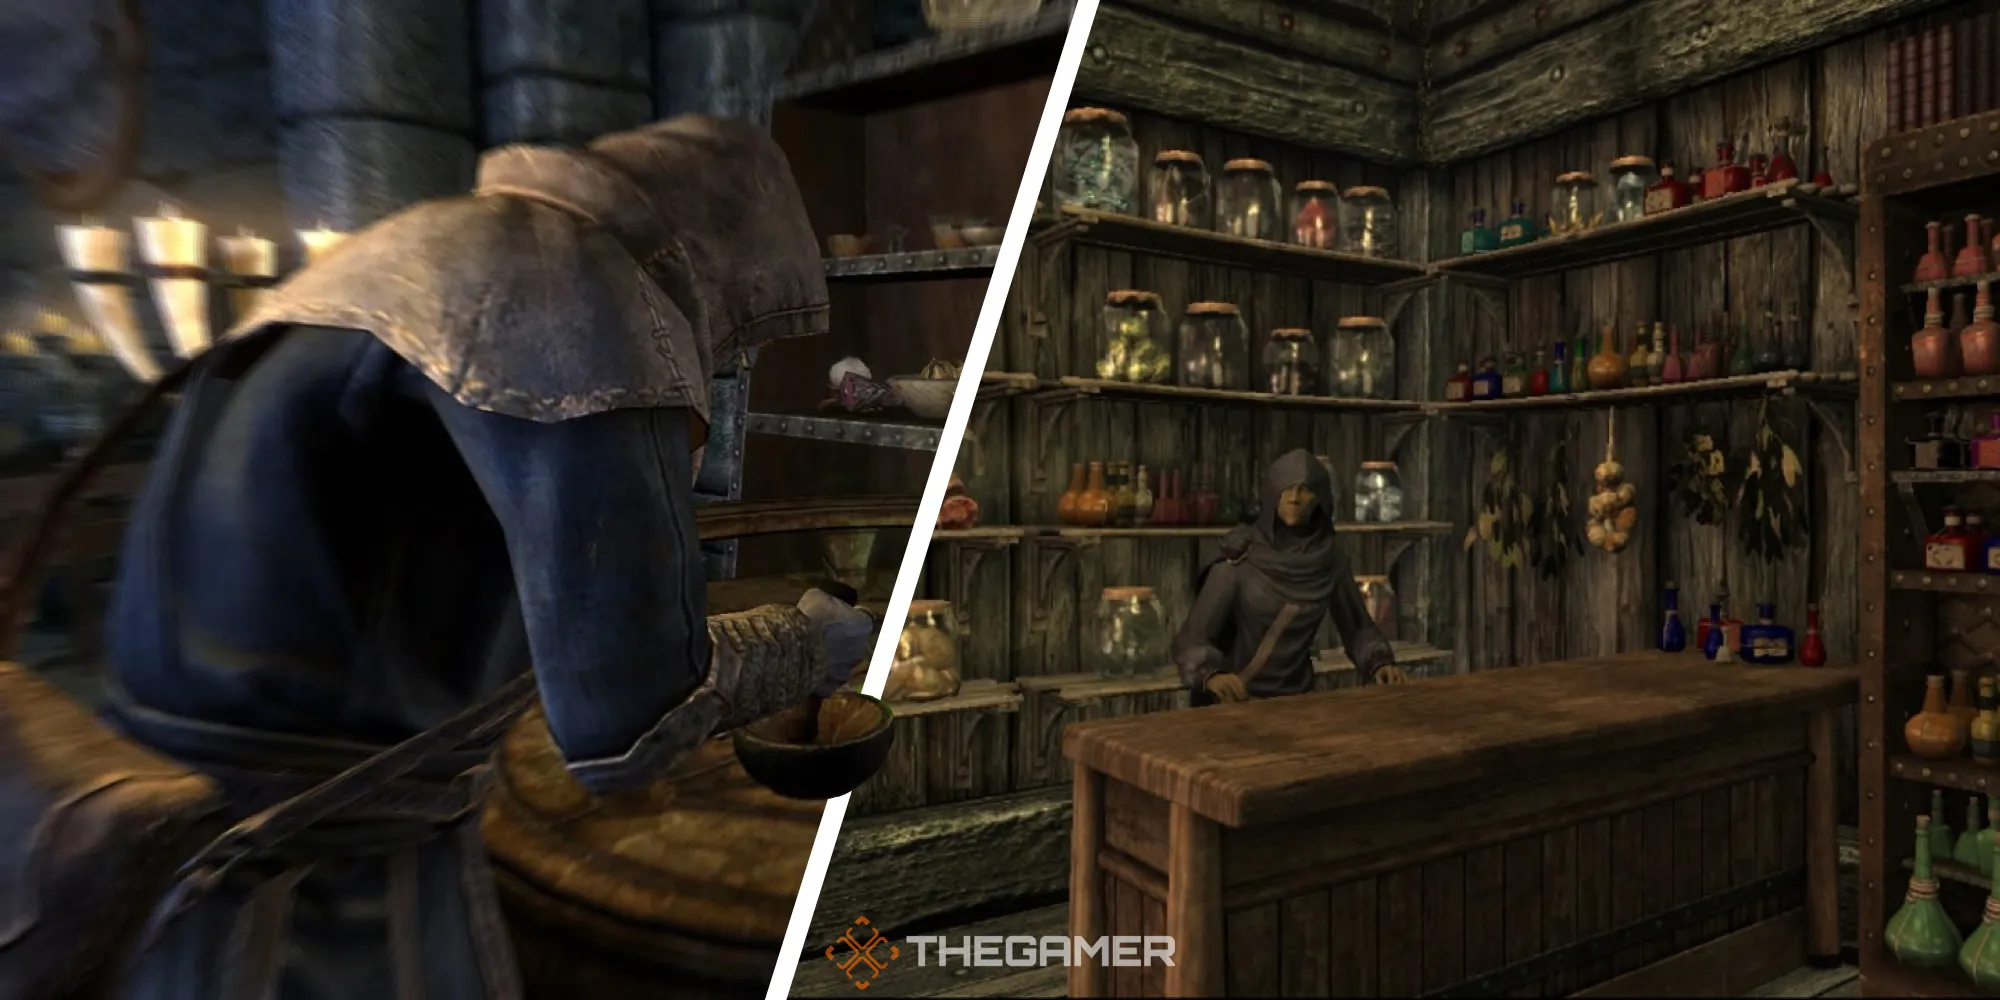 Skyrim: Une image divisée du joueur fabriquant un objet alchimique à gauche et d'un marchand alchimiste à droite